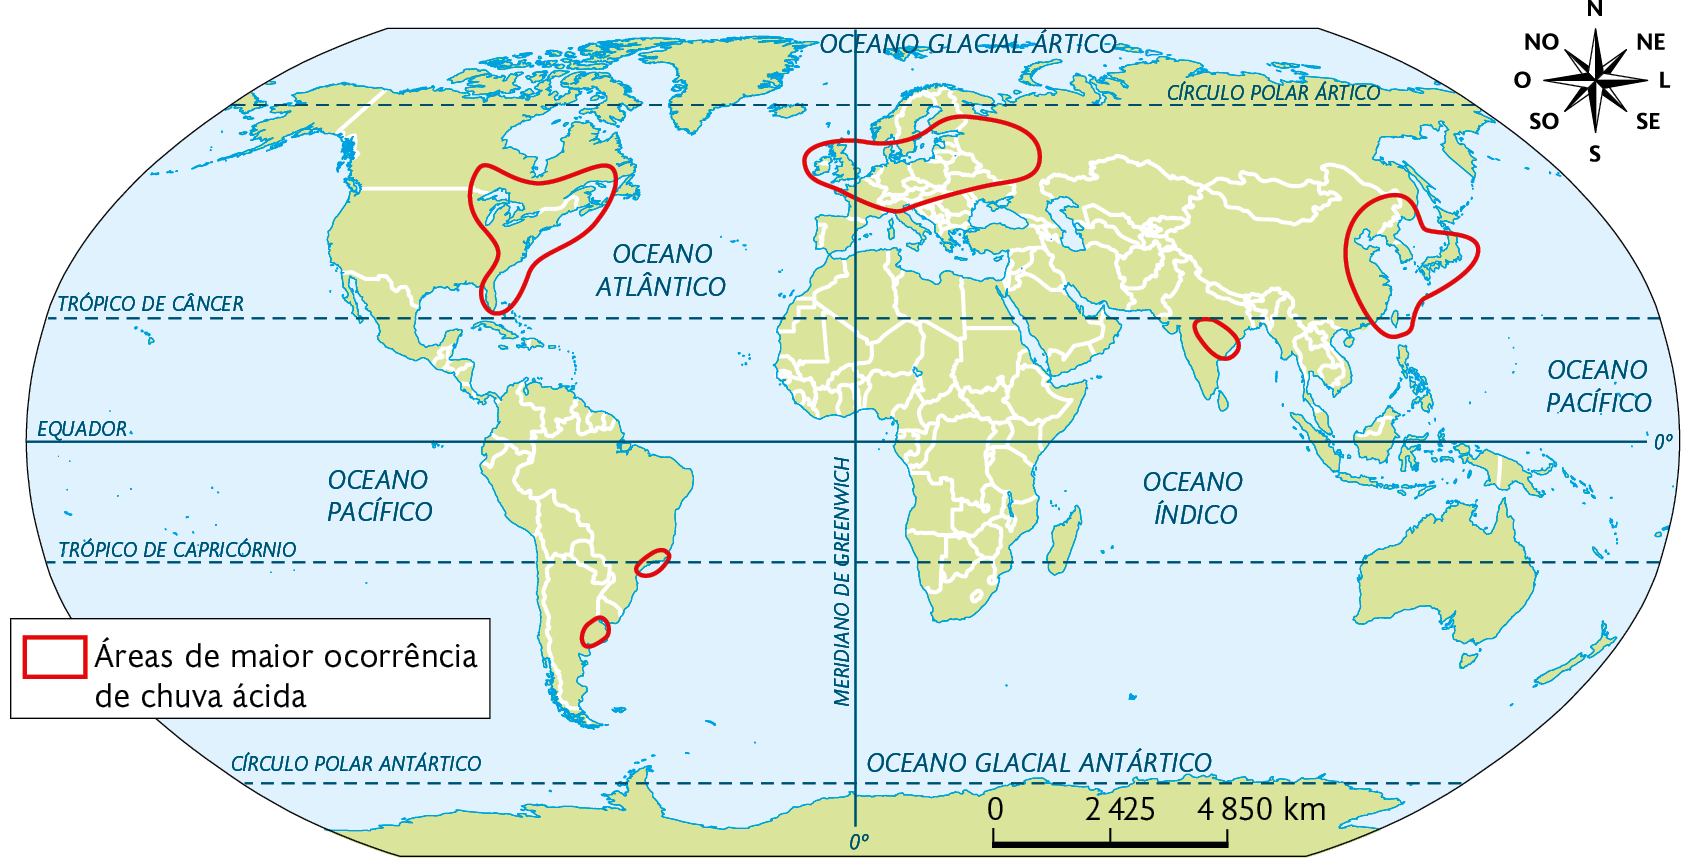 Mapa. Áreas de ocorrência da chuva ácida no mundo (2019). 
Áreas de maior ocorrência de chuva ácida: leste da América do Norte, duas áreas pequenas na costa leste da América do Sul, norte da Europa, sul e leste da Ásia. No canto superior direito, a rosa dos ventos. Na parte inferior, a escala: 4850 quilômetros por centímetro.